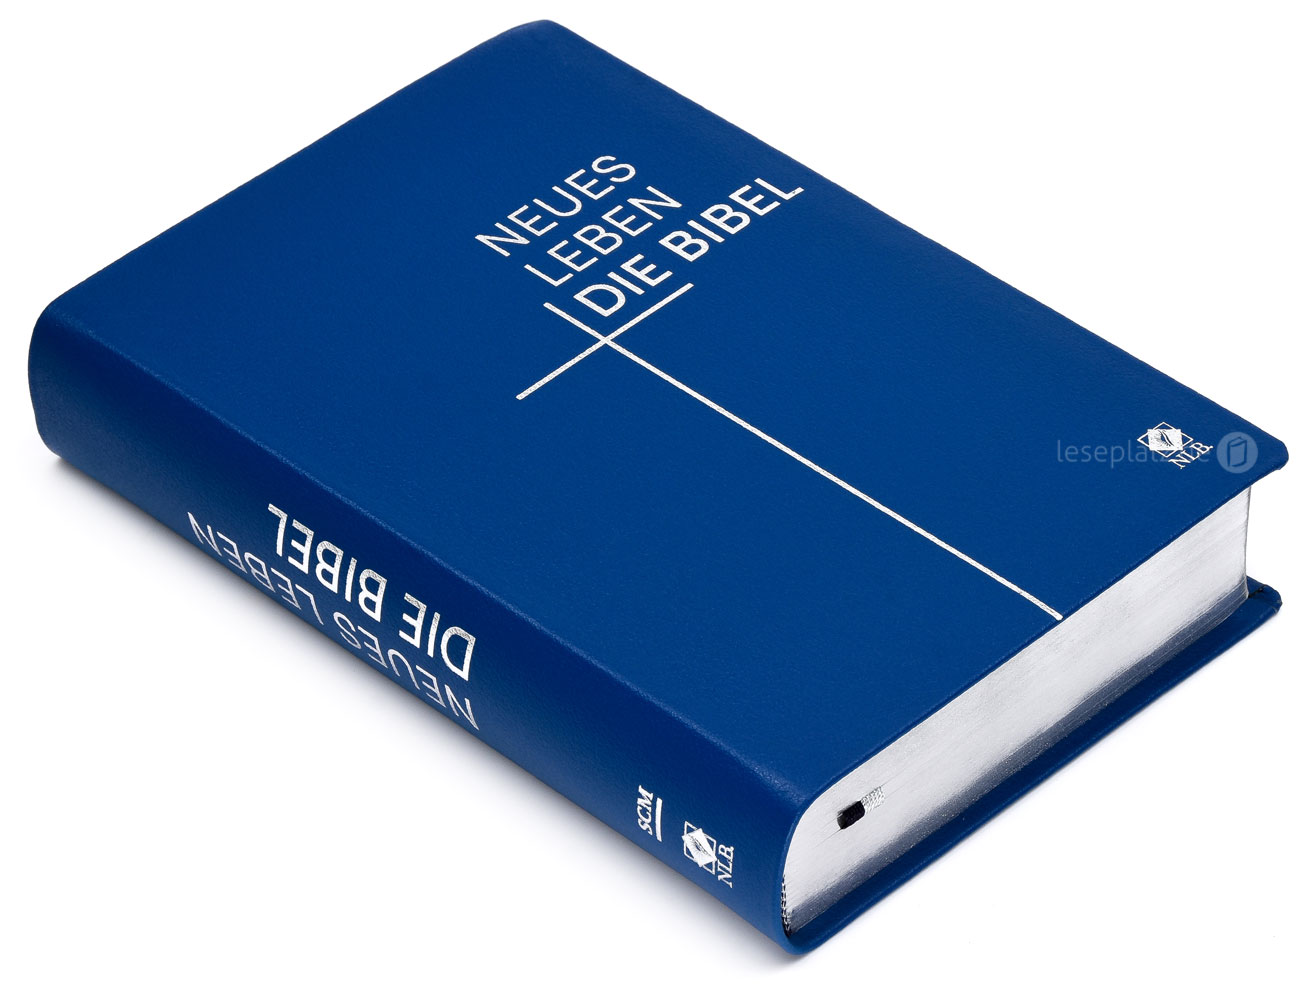 Neues Leben. Die Bibel - Standardausgabe - Leder Blau / Silberschnitt